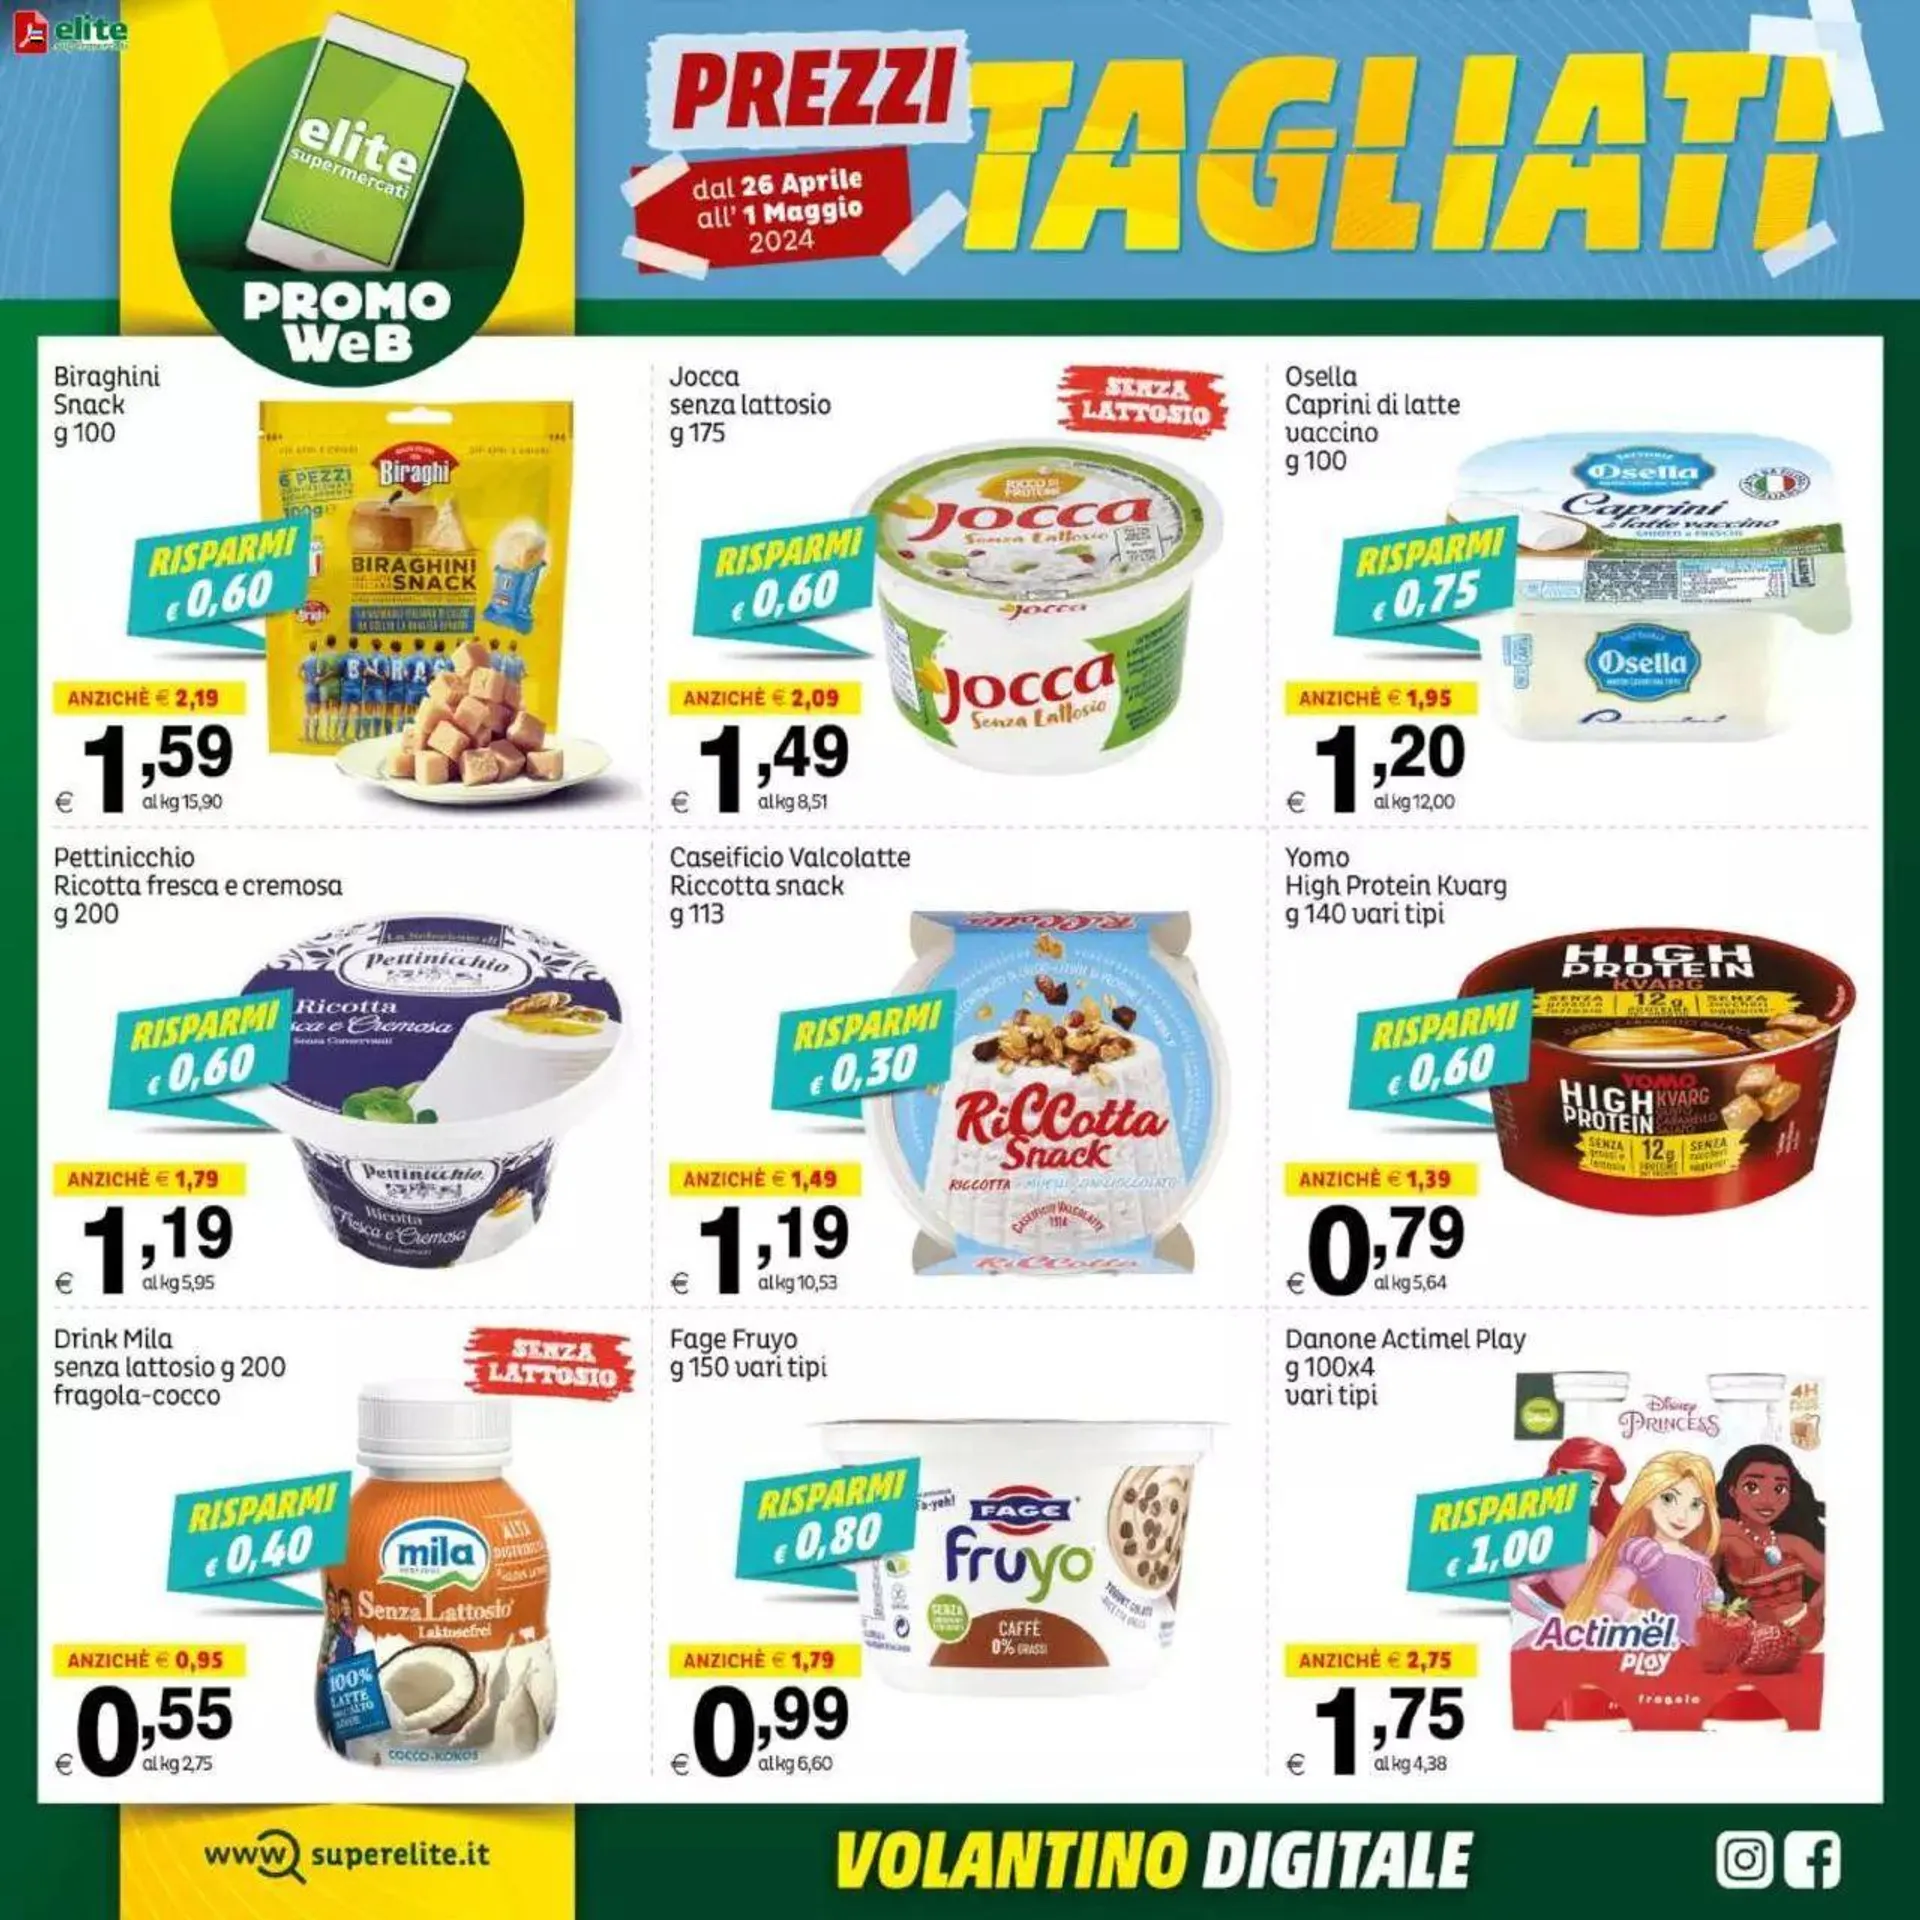 Promo Web - Prezzi Tagliati Elite Supermercati - 1